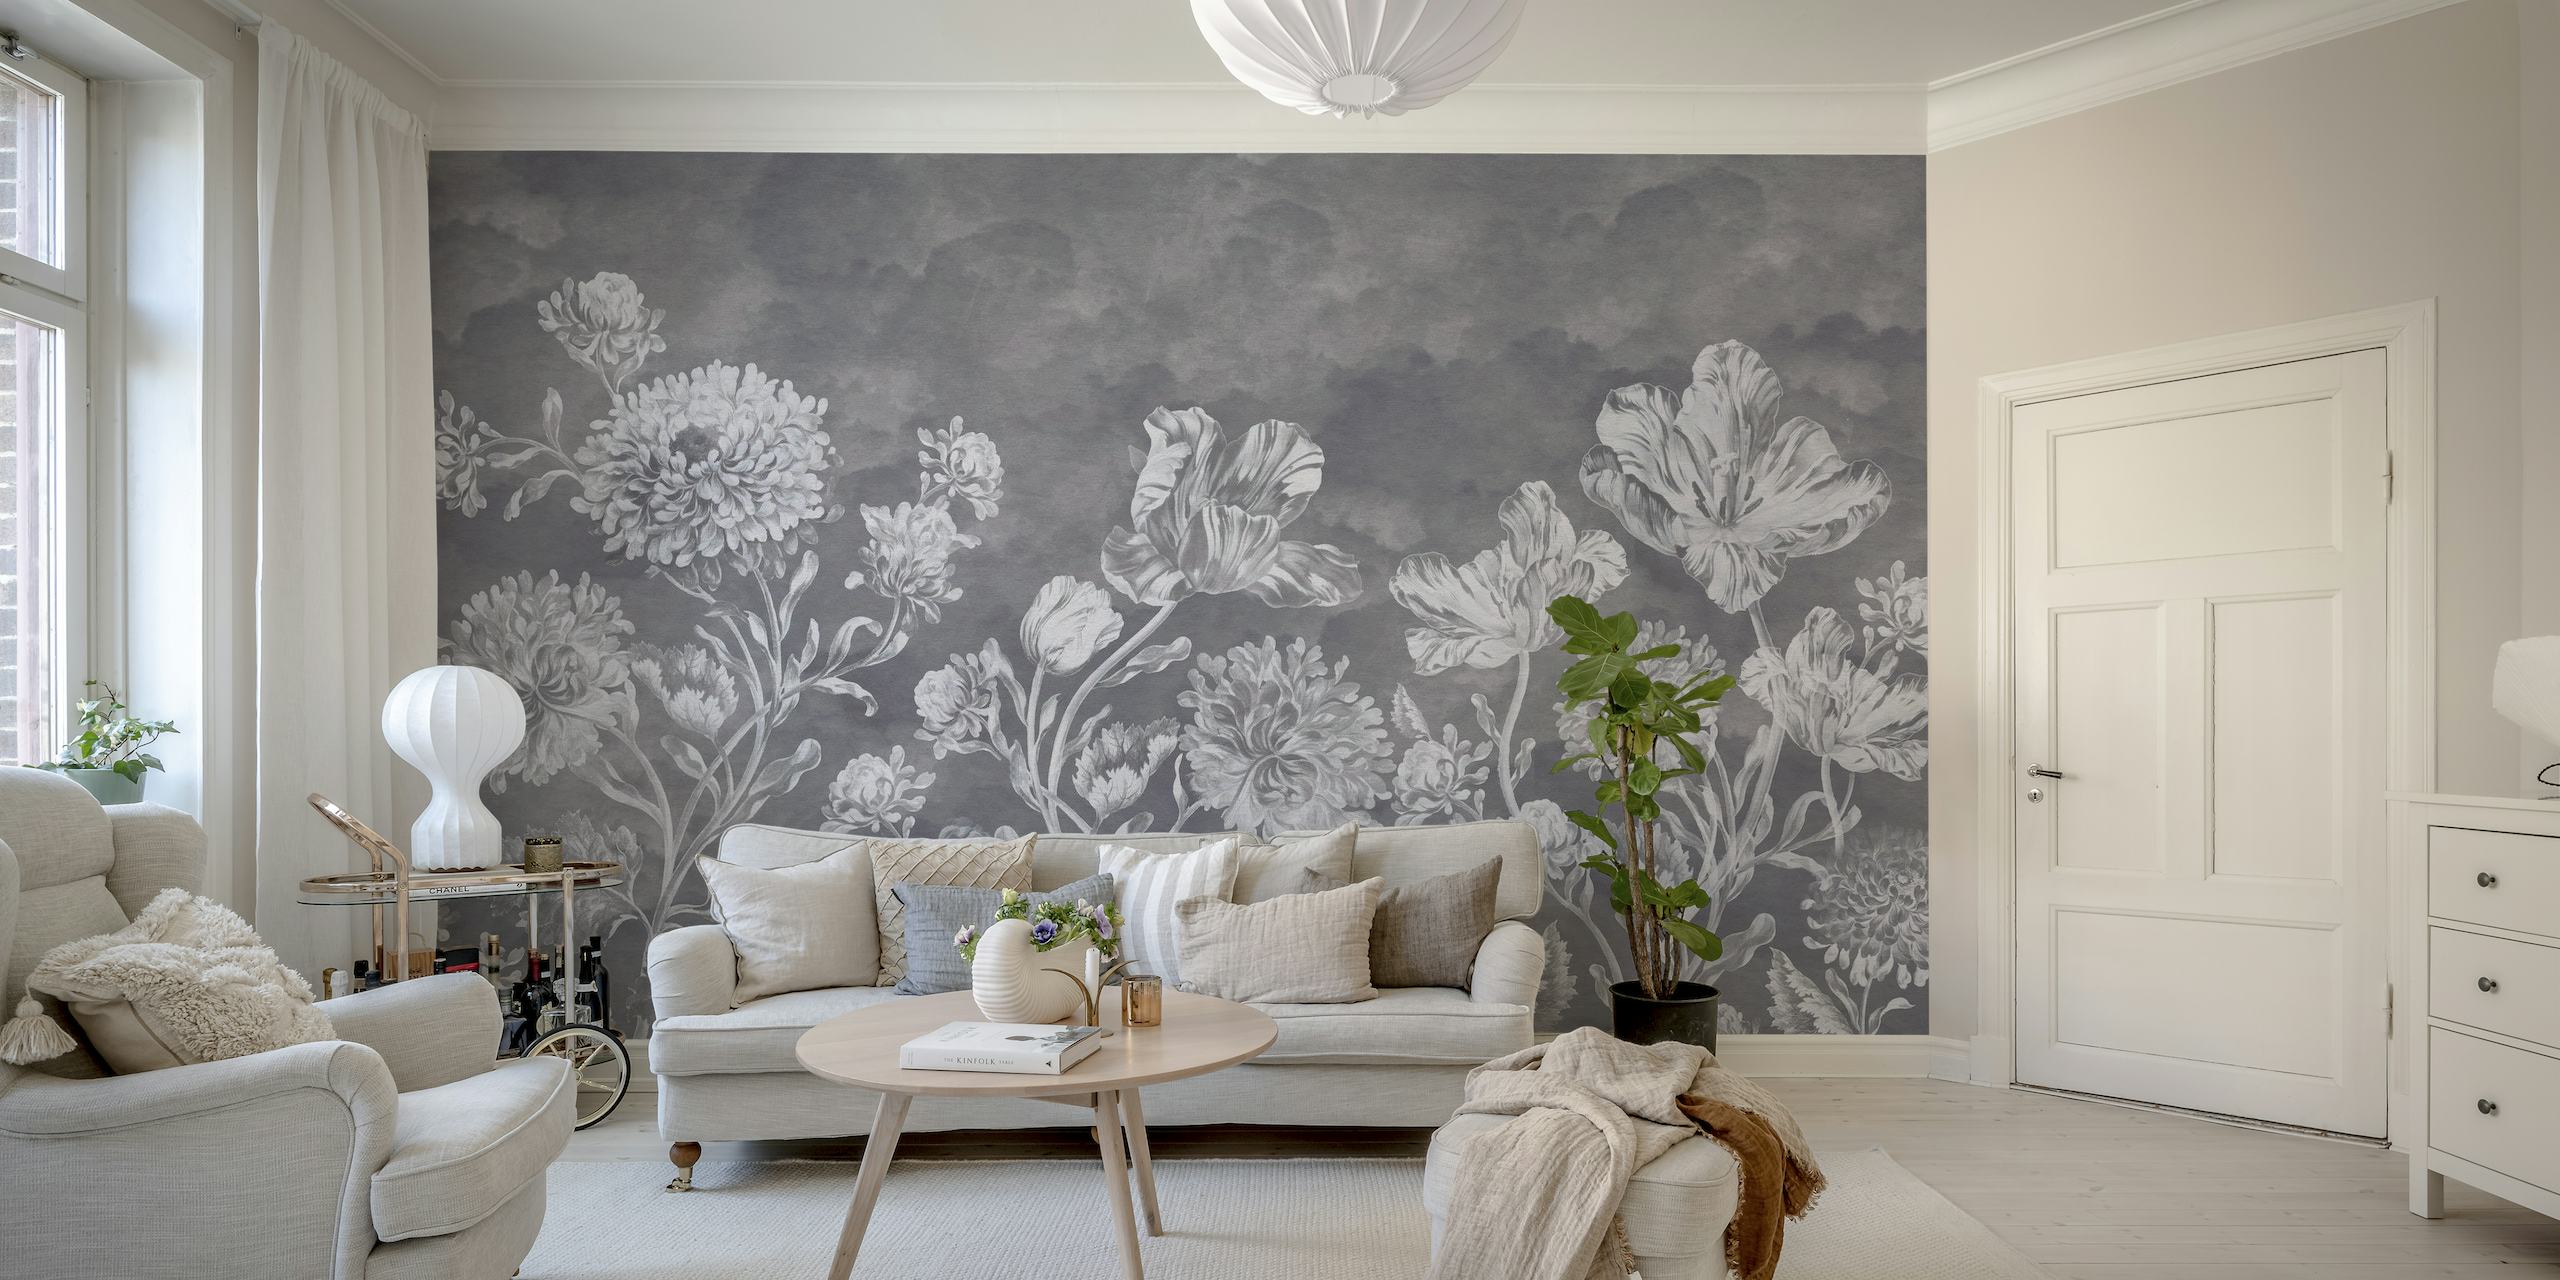 Mural de pared floral de estilo barroco oscuro y cambiante con intrincados diseños florales en escala de grises